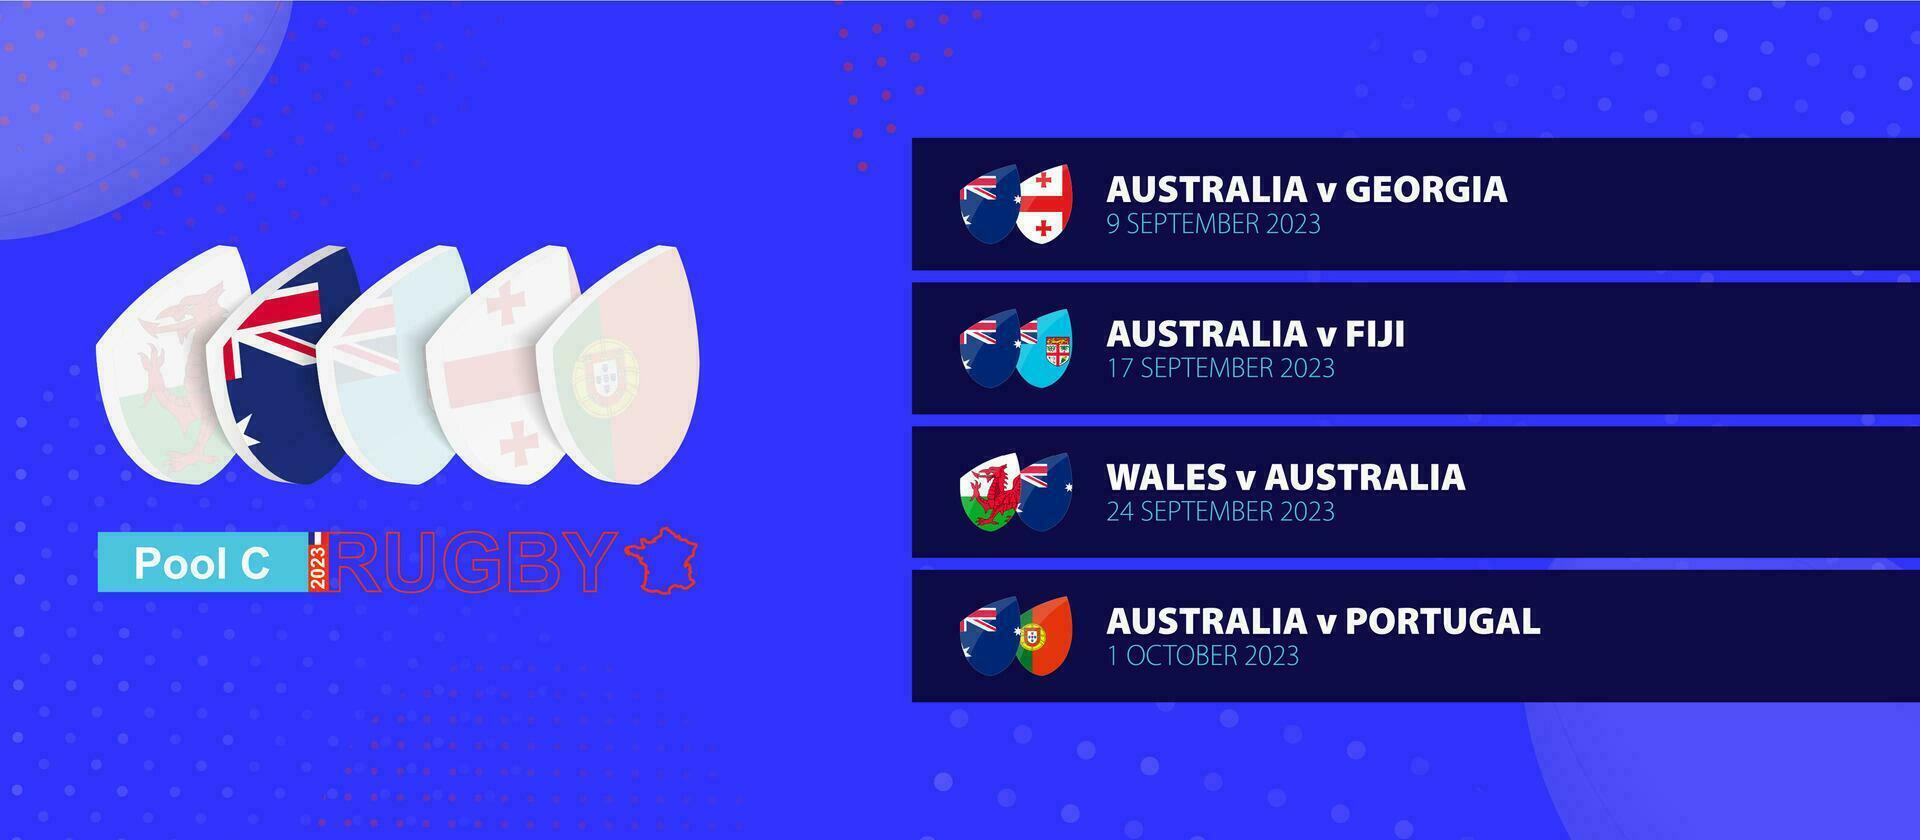 Australia rugby nacional equipo calendario partidos en grupo etapa de internacional rugby competencia. vector